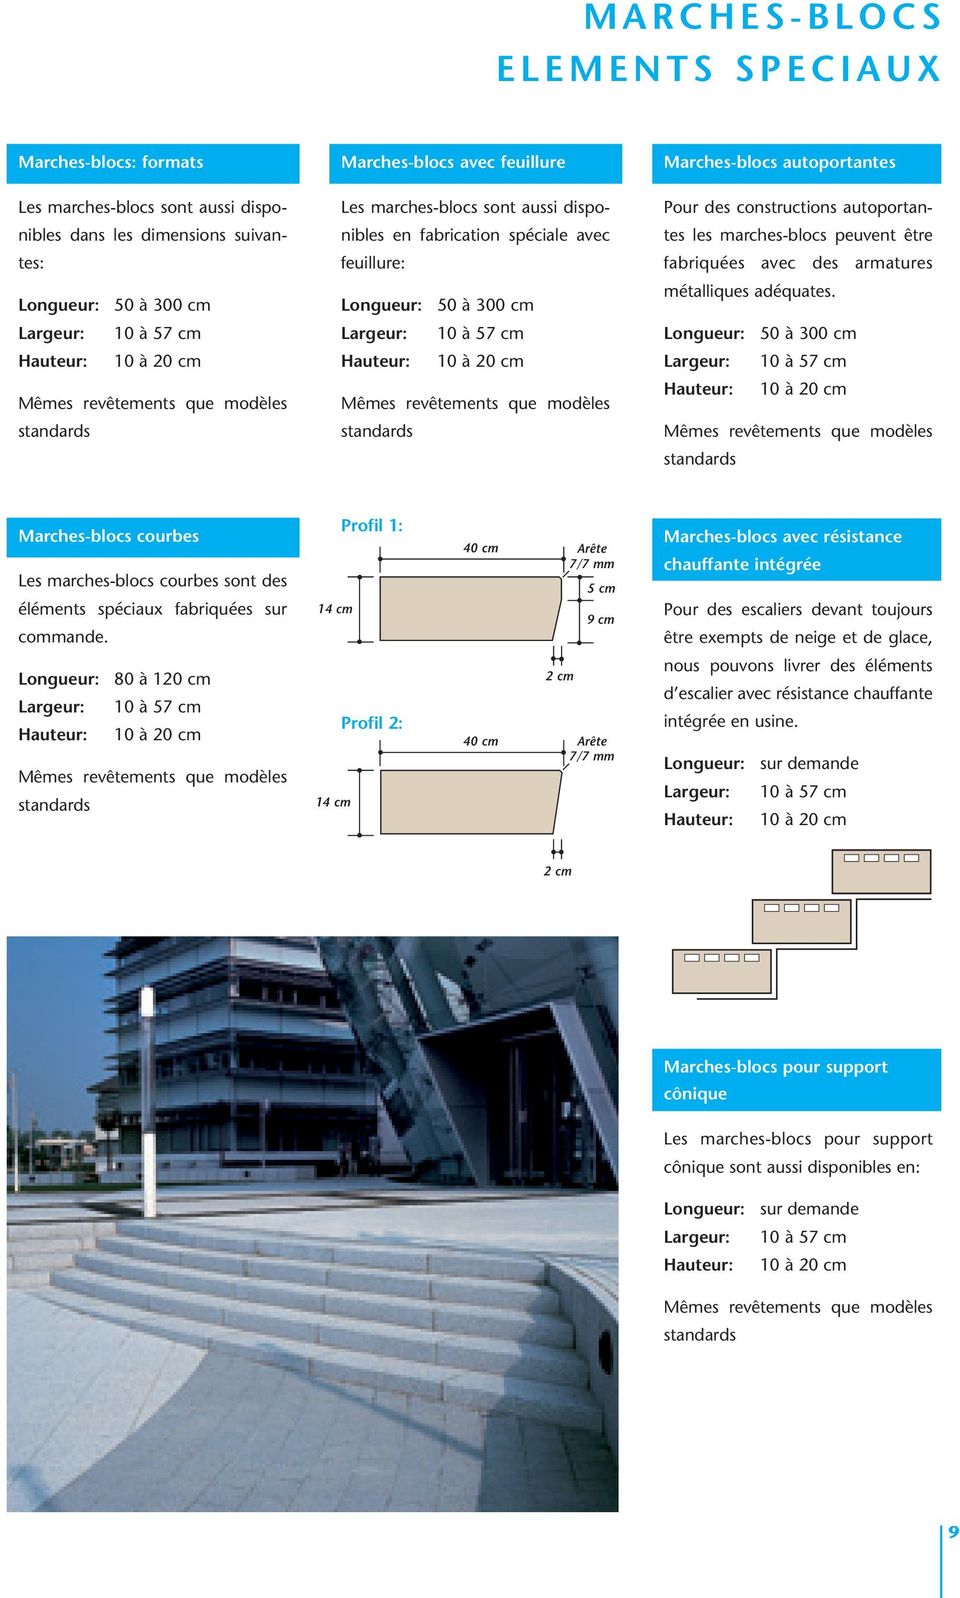 constructions autoportantes les marches-blocs peuvent être fabriquées avec des armatures métalliques adéquates.